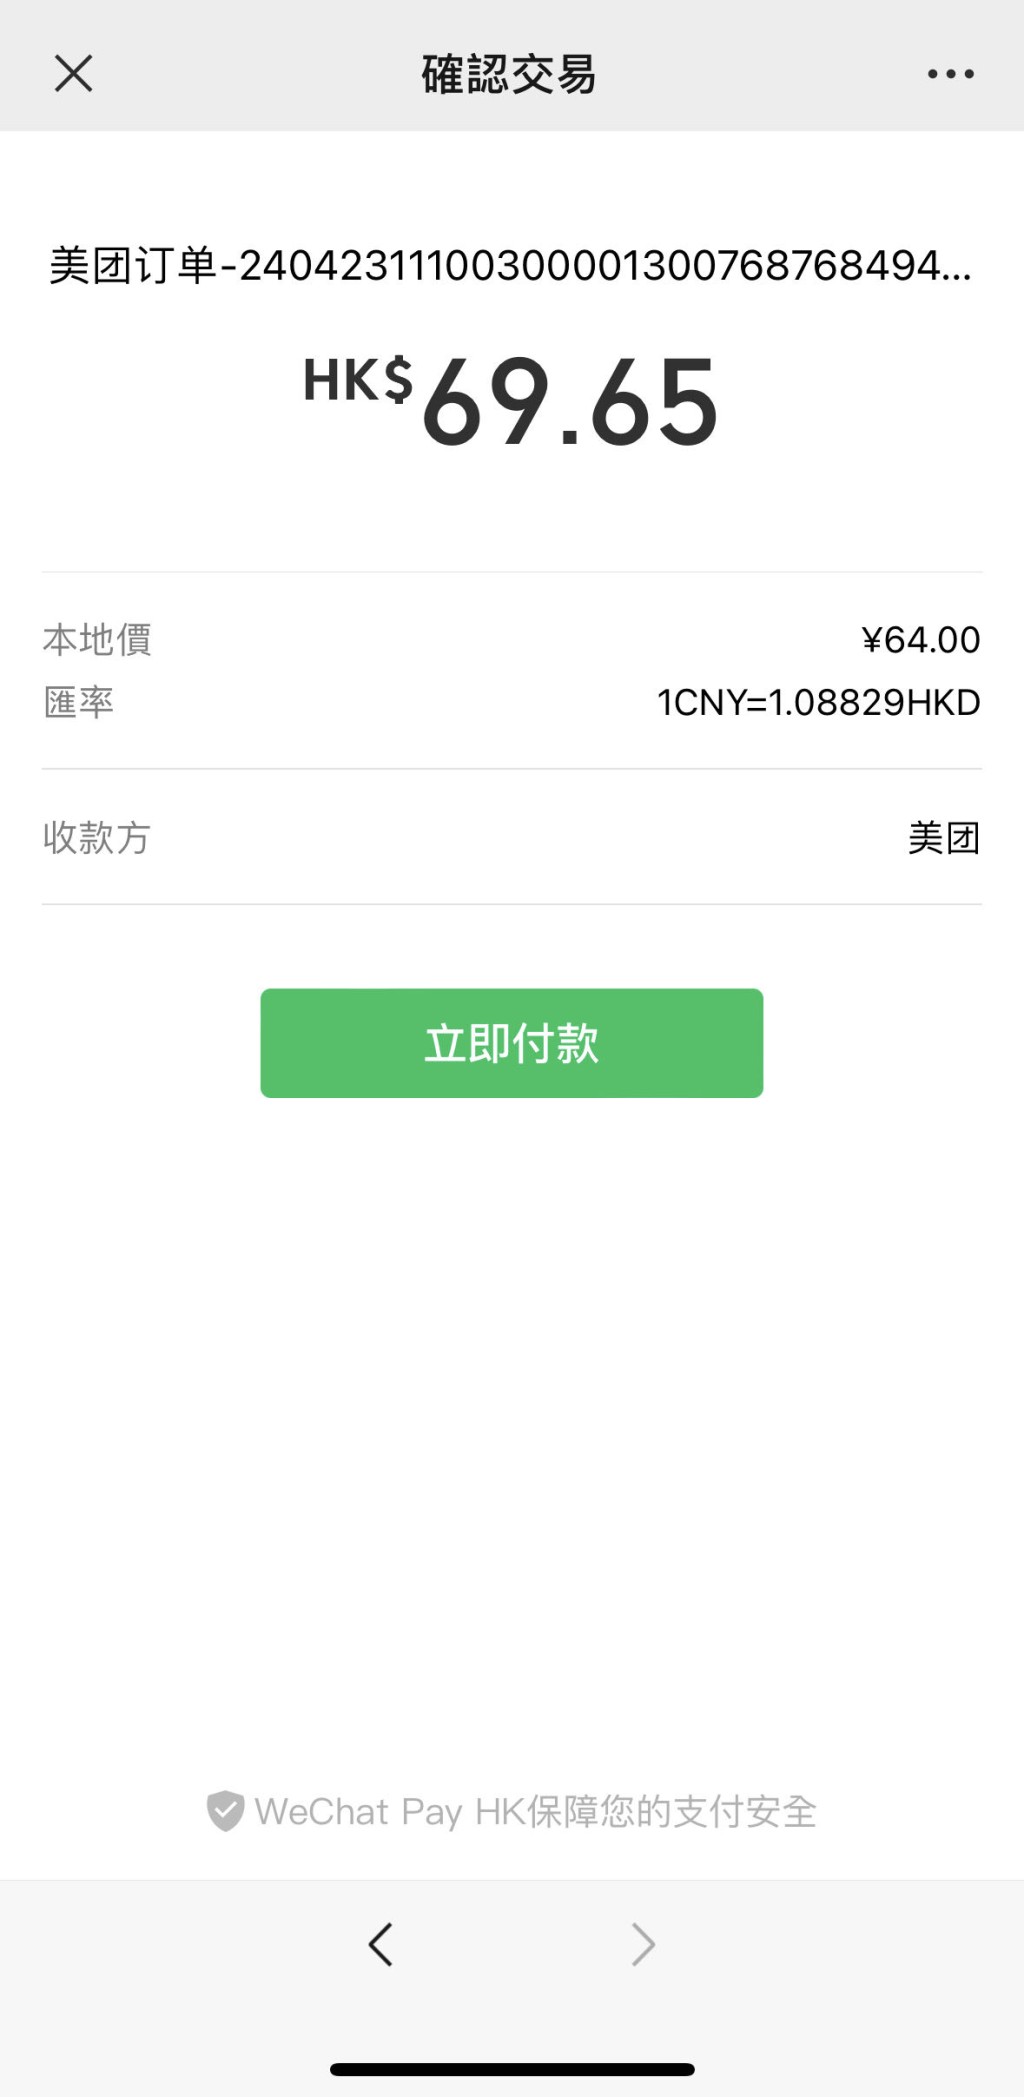  12. 跳轉至WeChat Pay HK港幣付款，0手續費